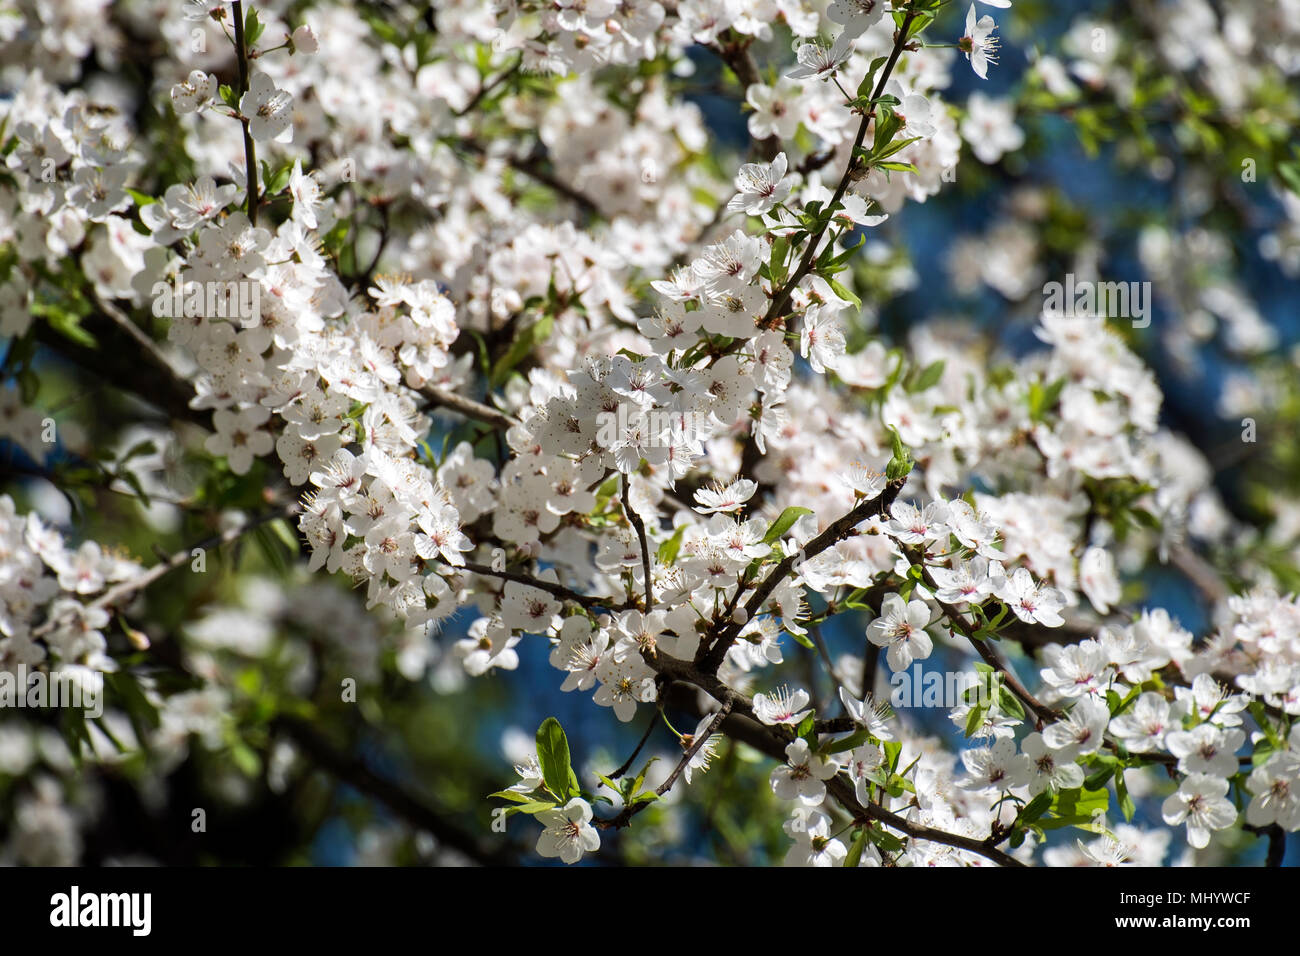 White flowers of blooming cherry plum (Prunus cerasifera) Stock Photo